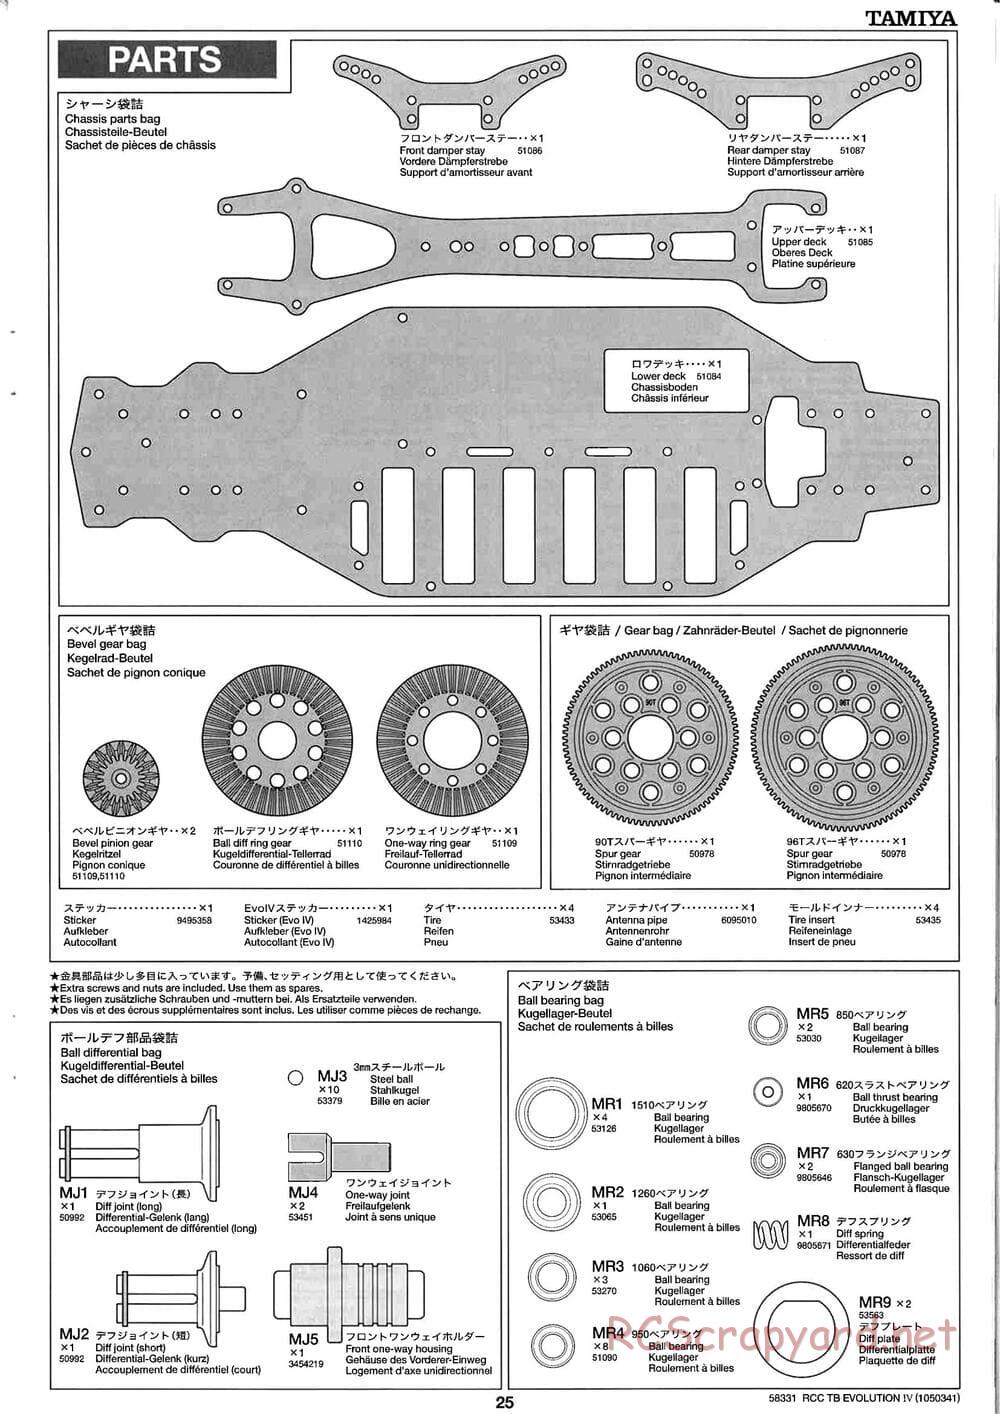 Tamiya - TB Evolution IV Chassis - Manual - Page 25